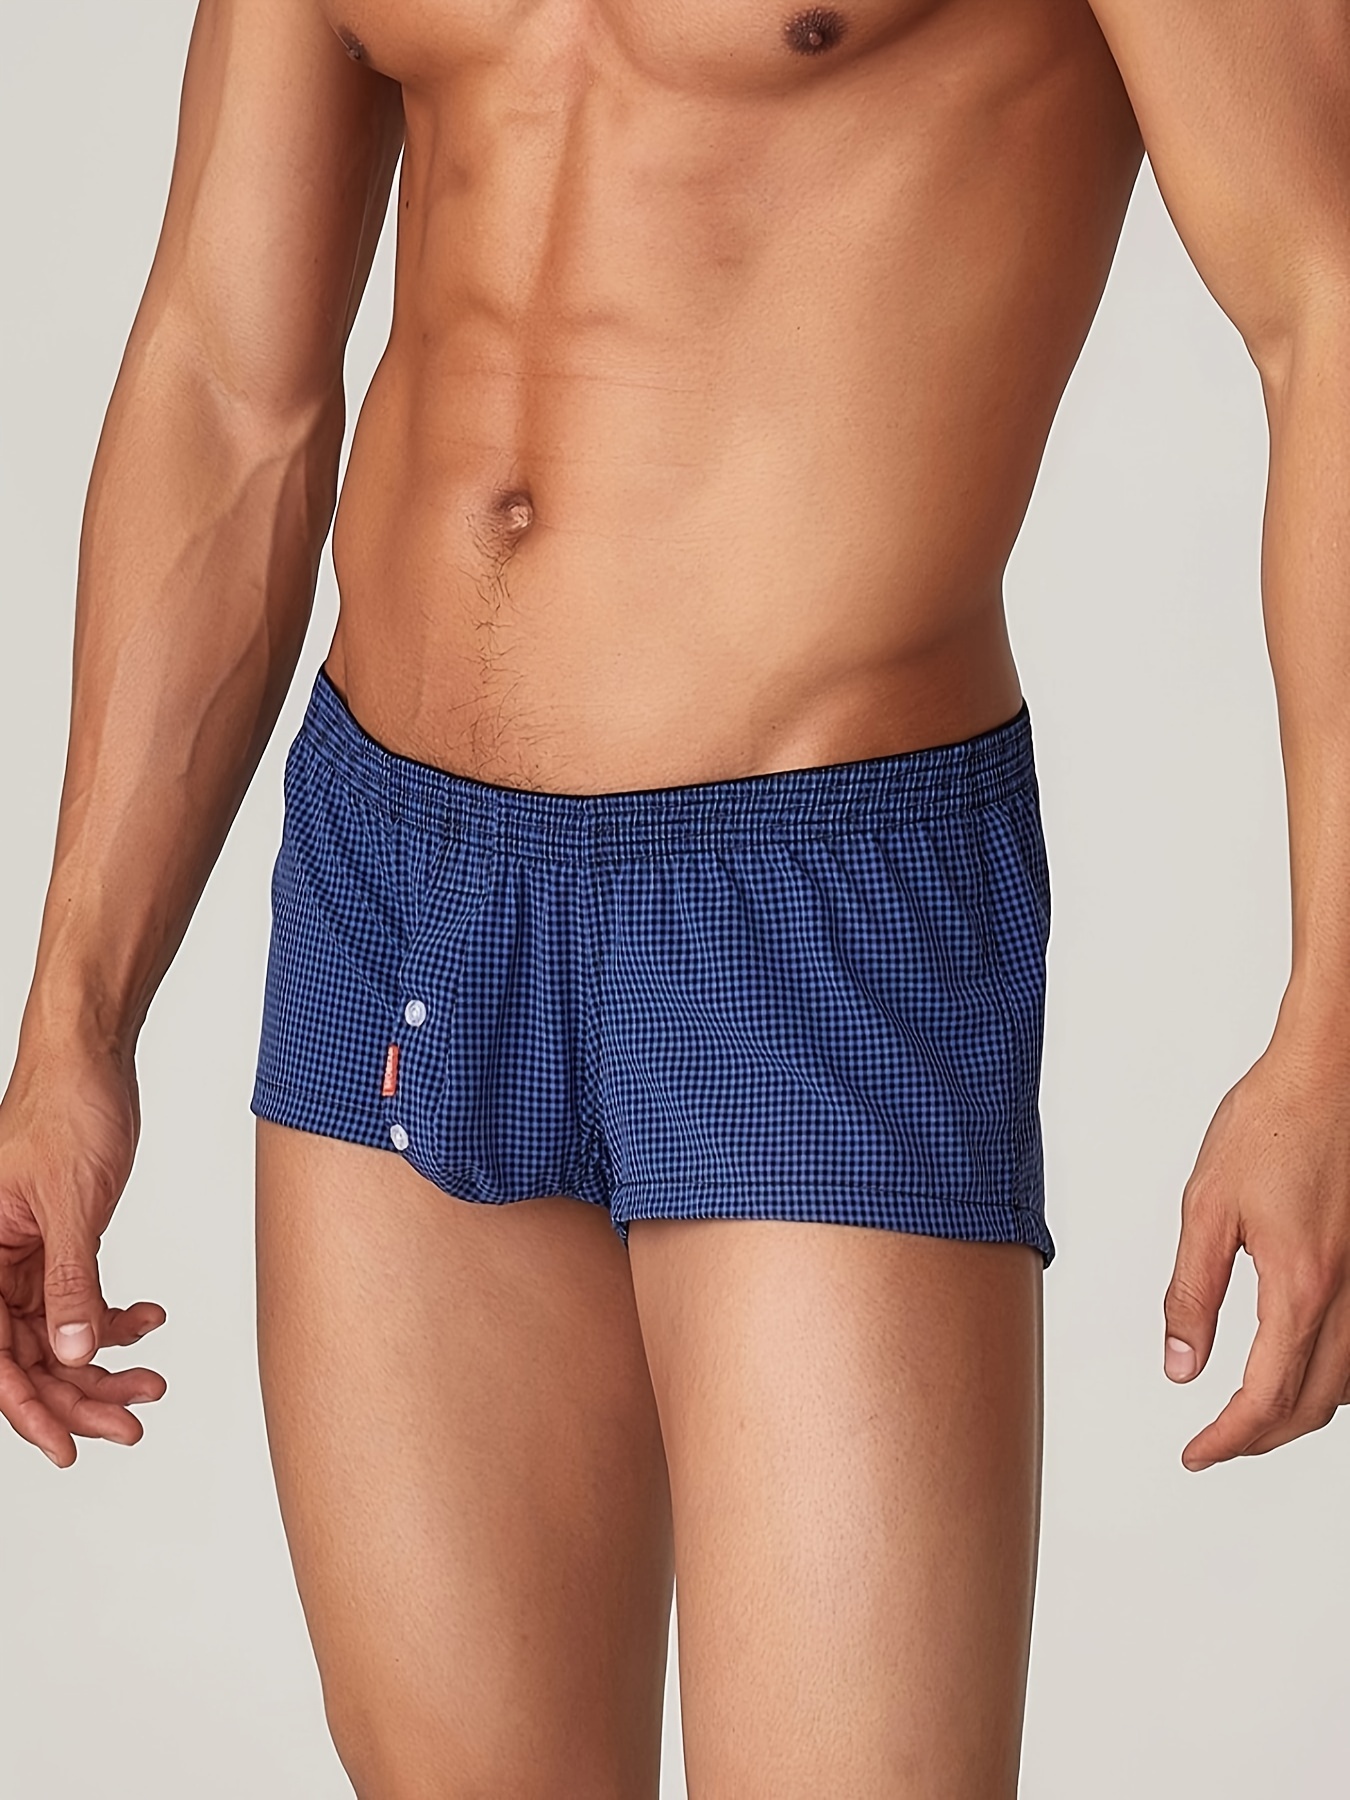 Men's Low Rise Tracksuit Home Plaid Cotton Pants Casual Shorts Boxer  Underwear